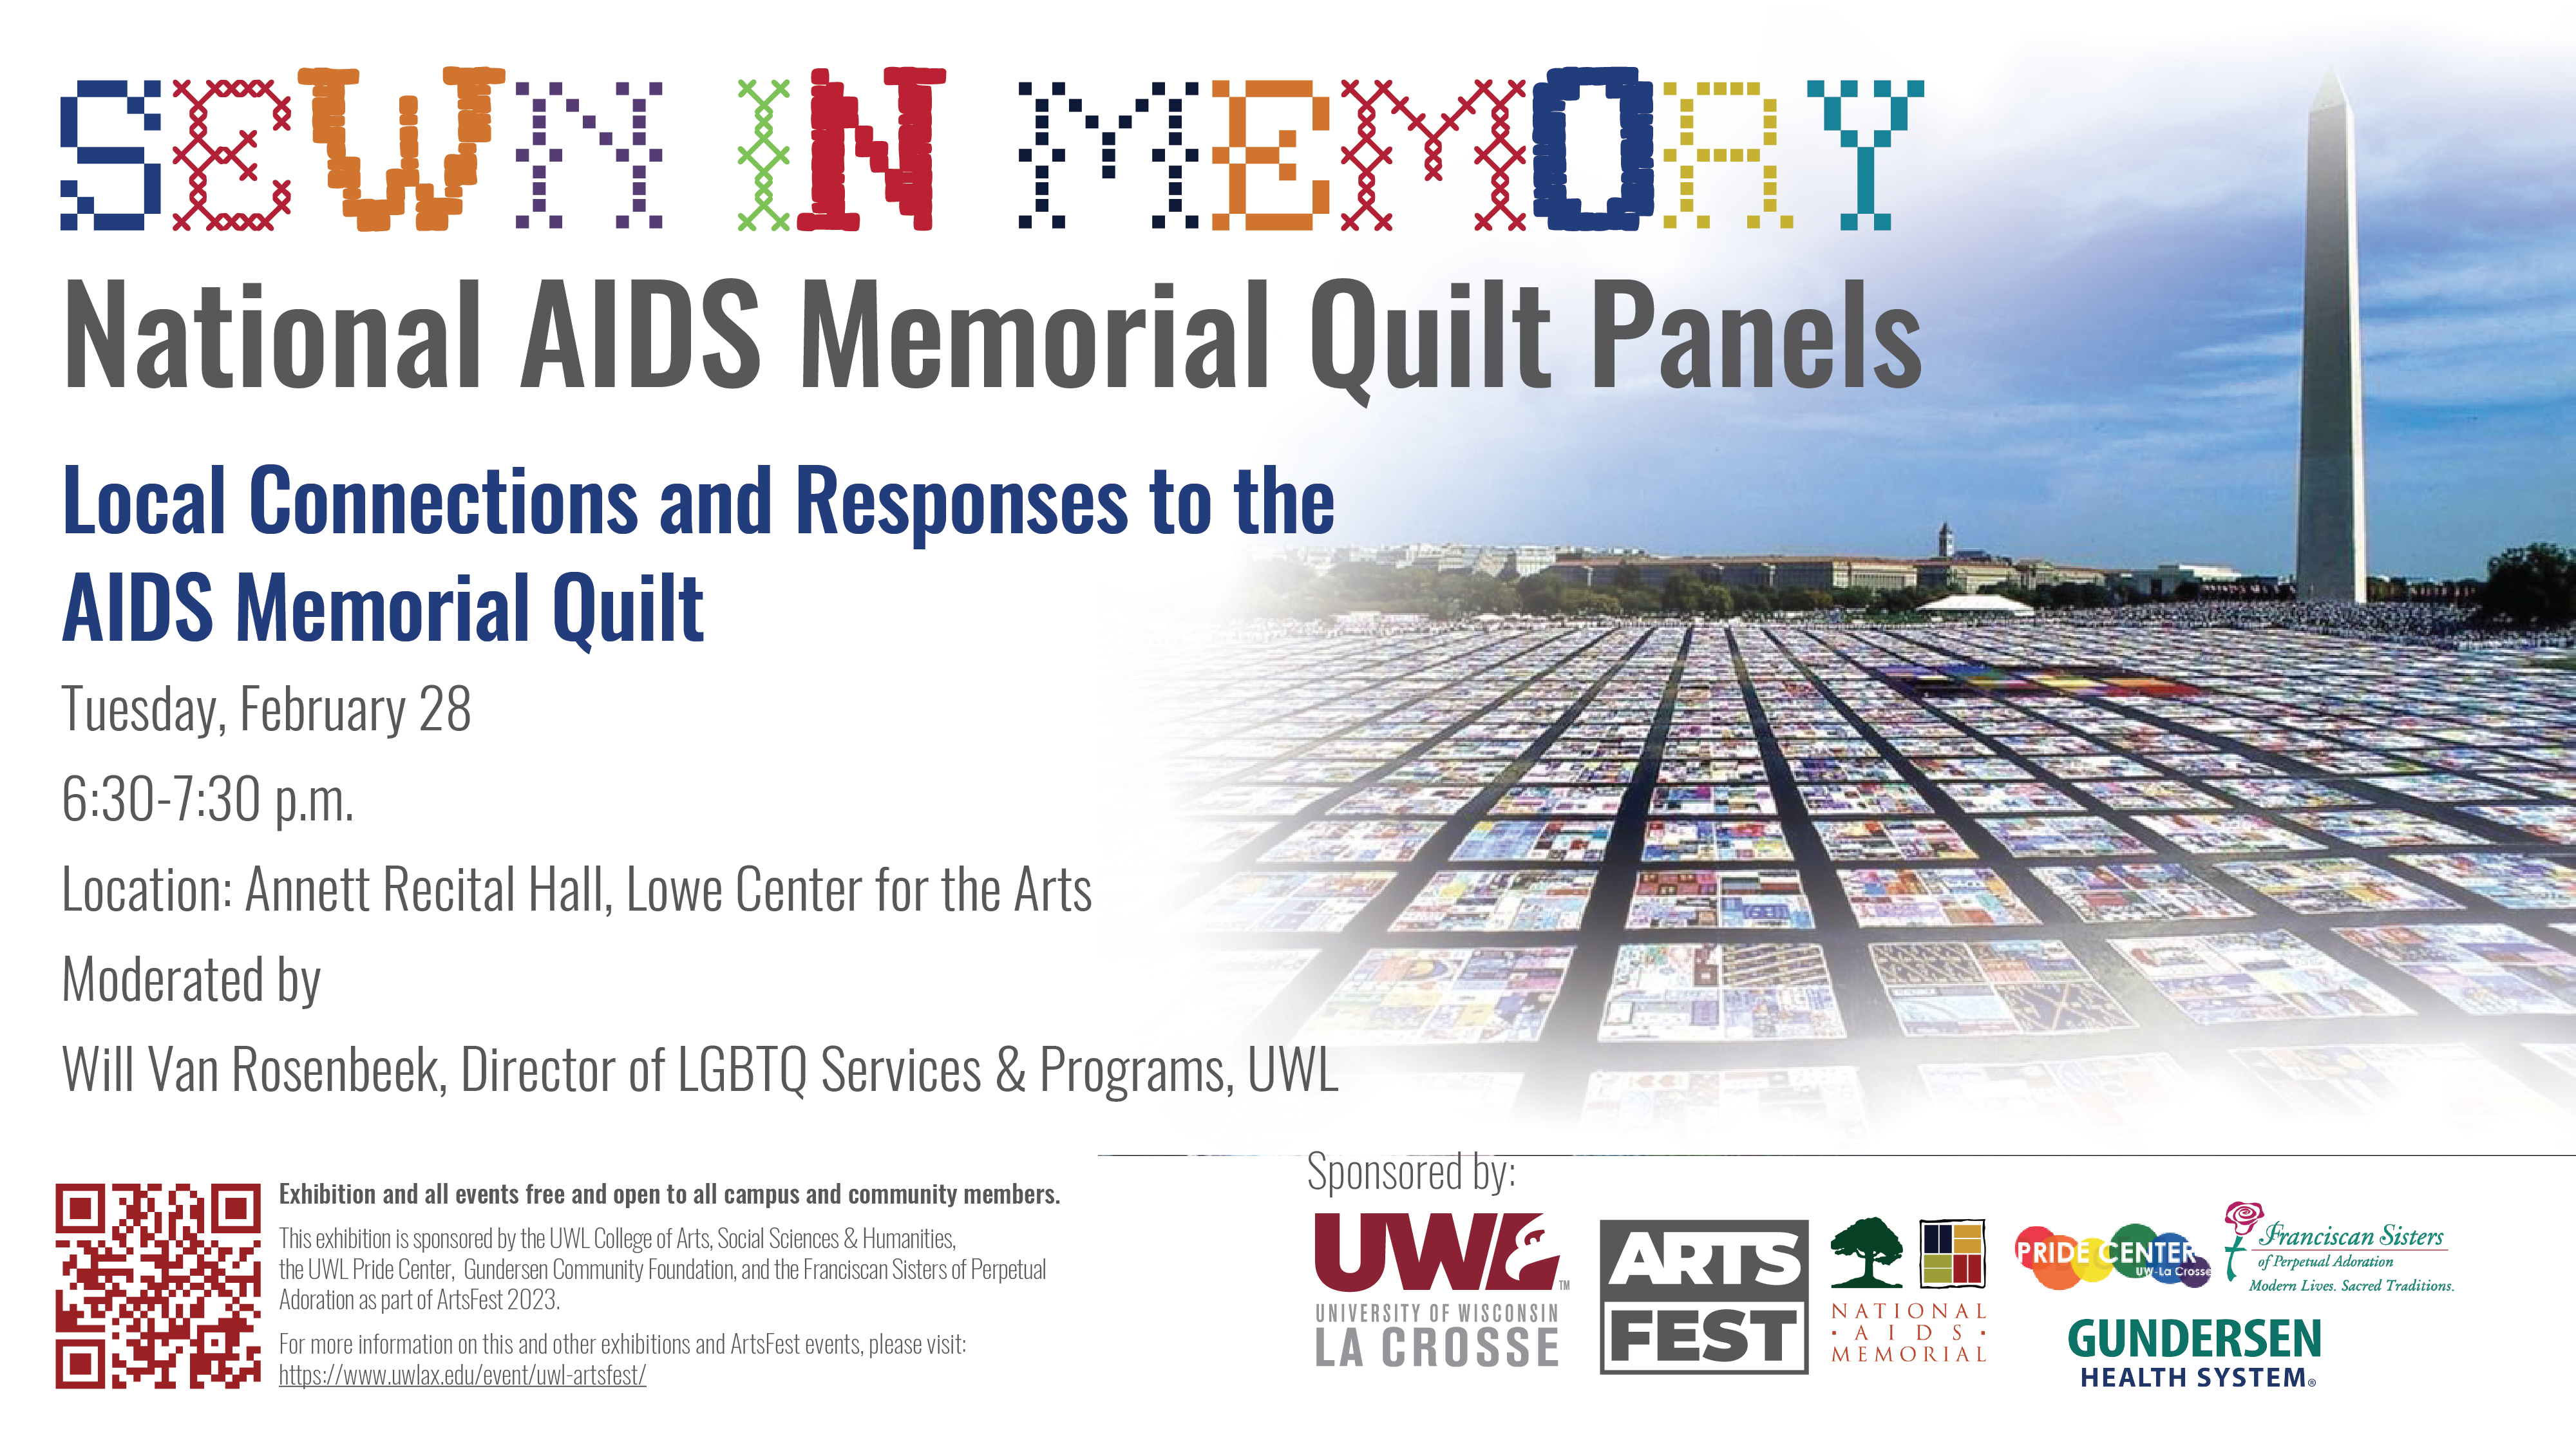 AIDS quilt event details